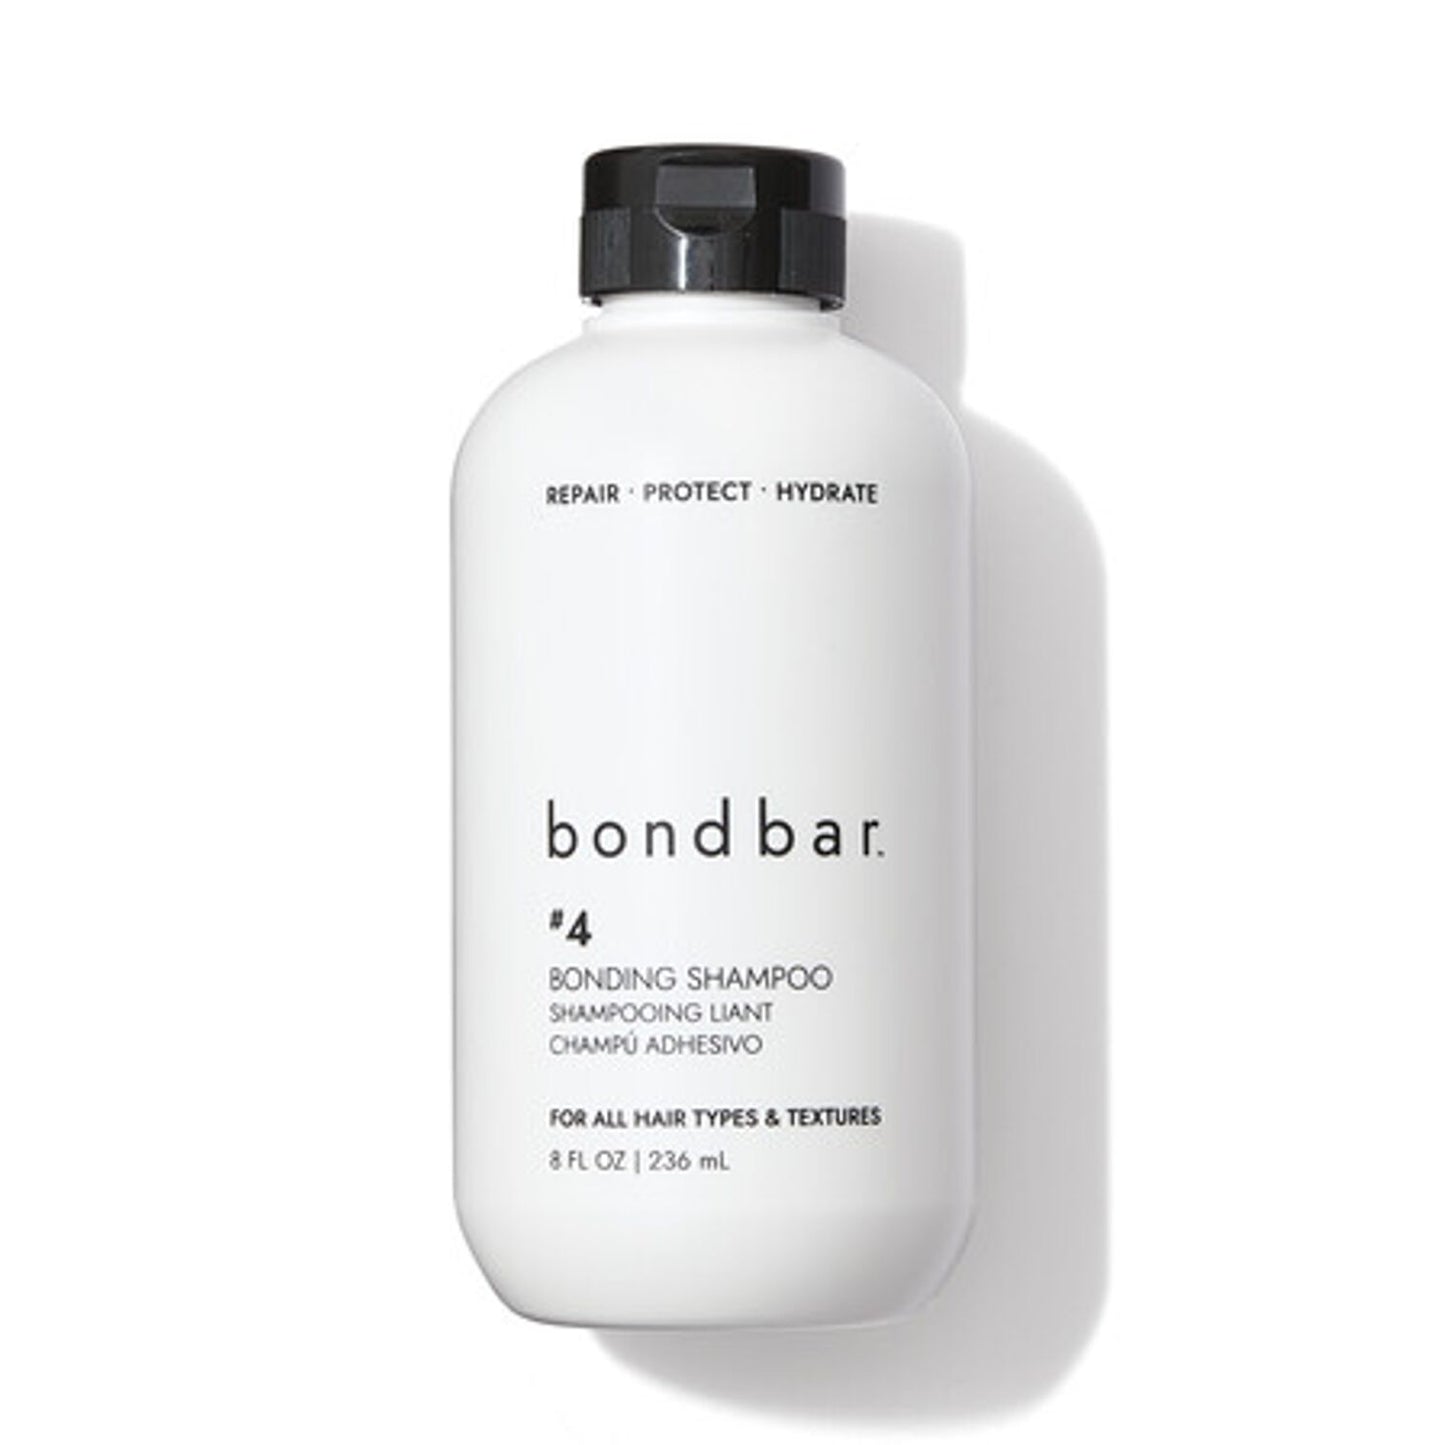 bondbar #4 Bonding Shampoo